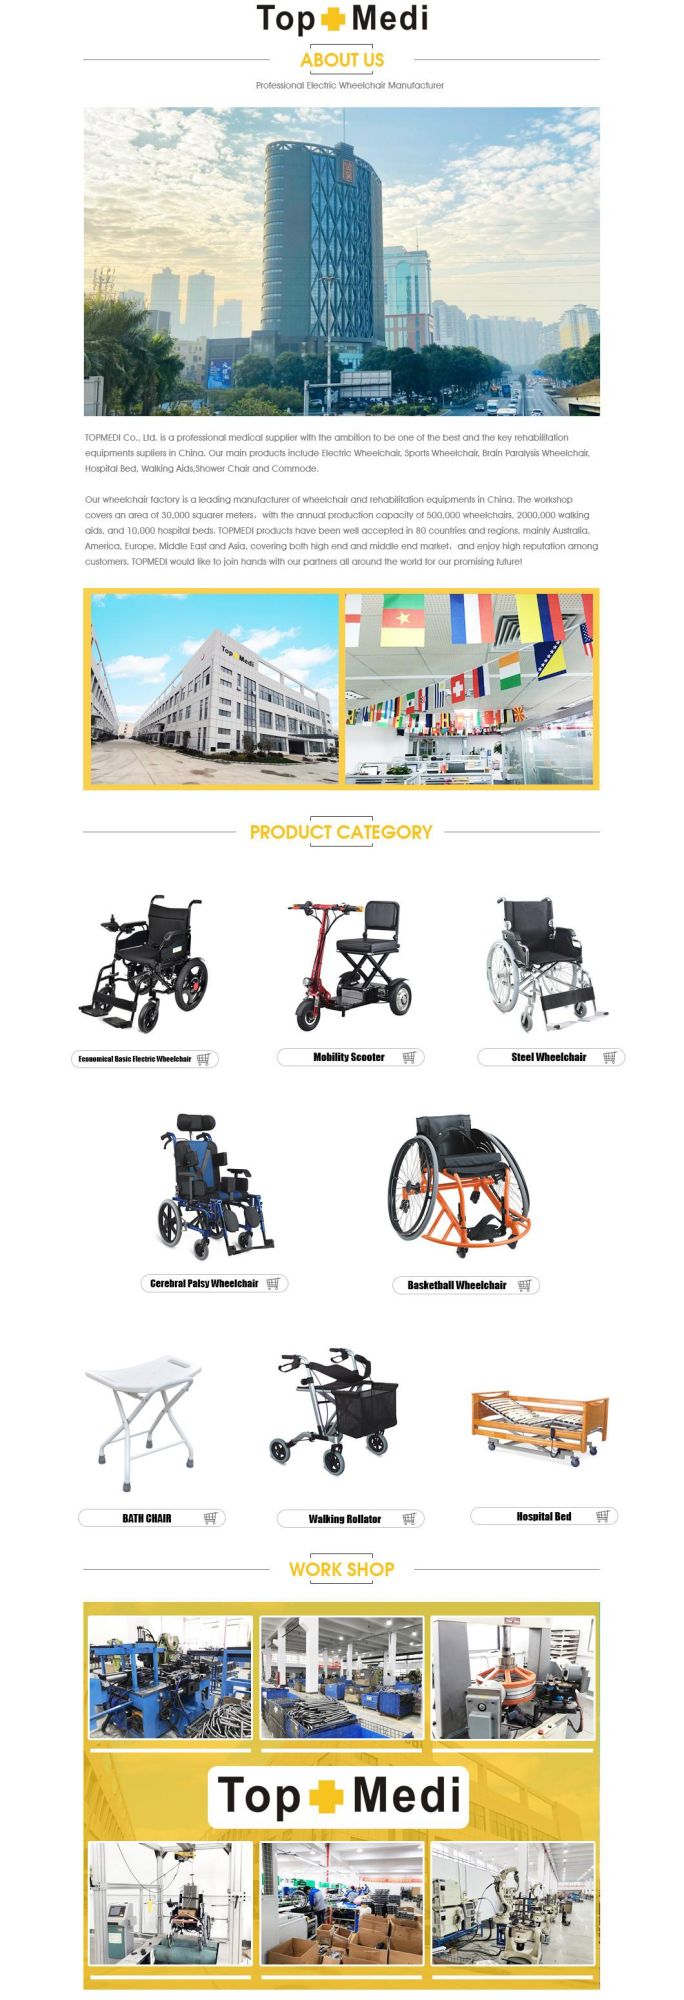 Topmedi Heavy Duty Wheelchair with Double Cross Bar